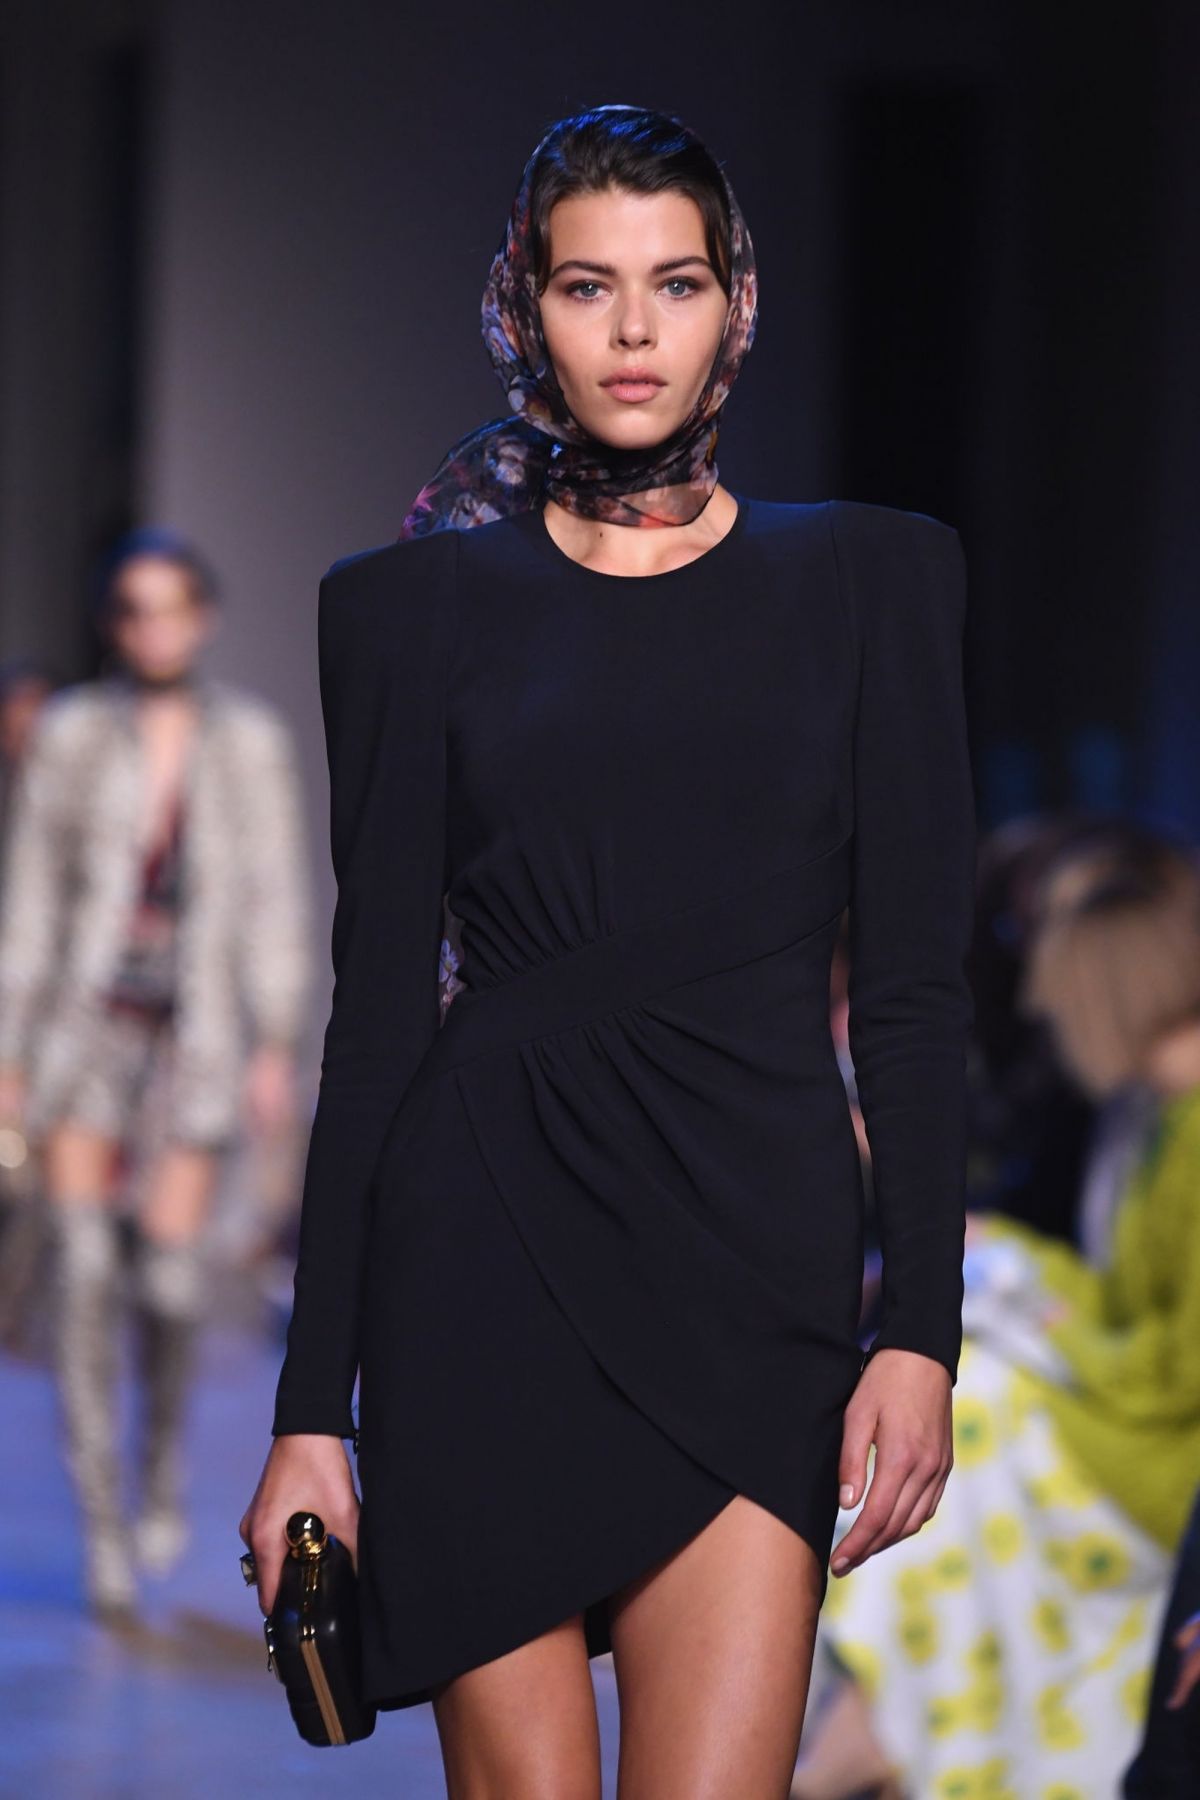 Model Georgia Fowler walks the catwalk for L'Oreal at Paris